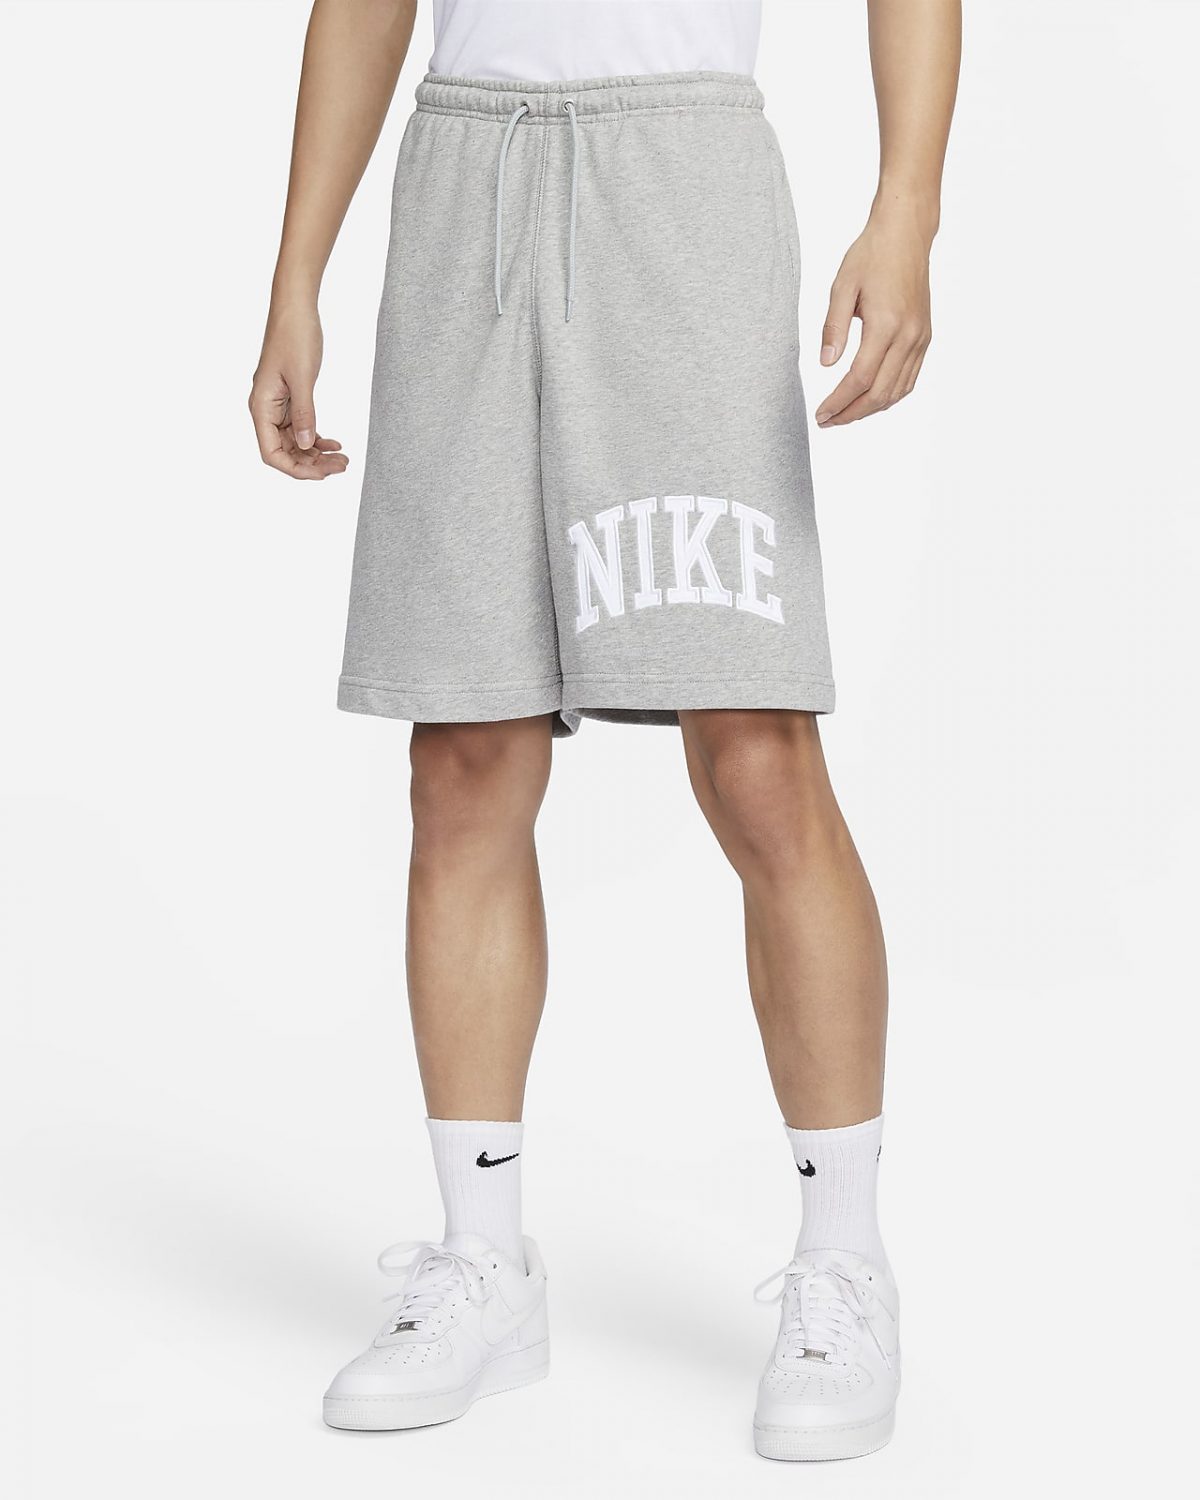 Мужские шорты Nike Sportswear Club белые фото